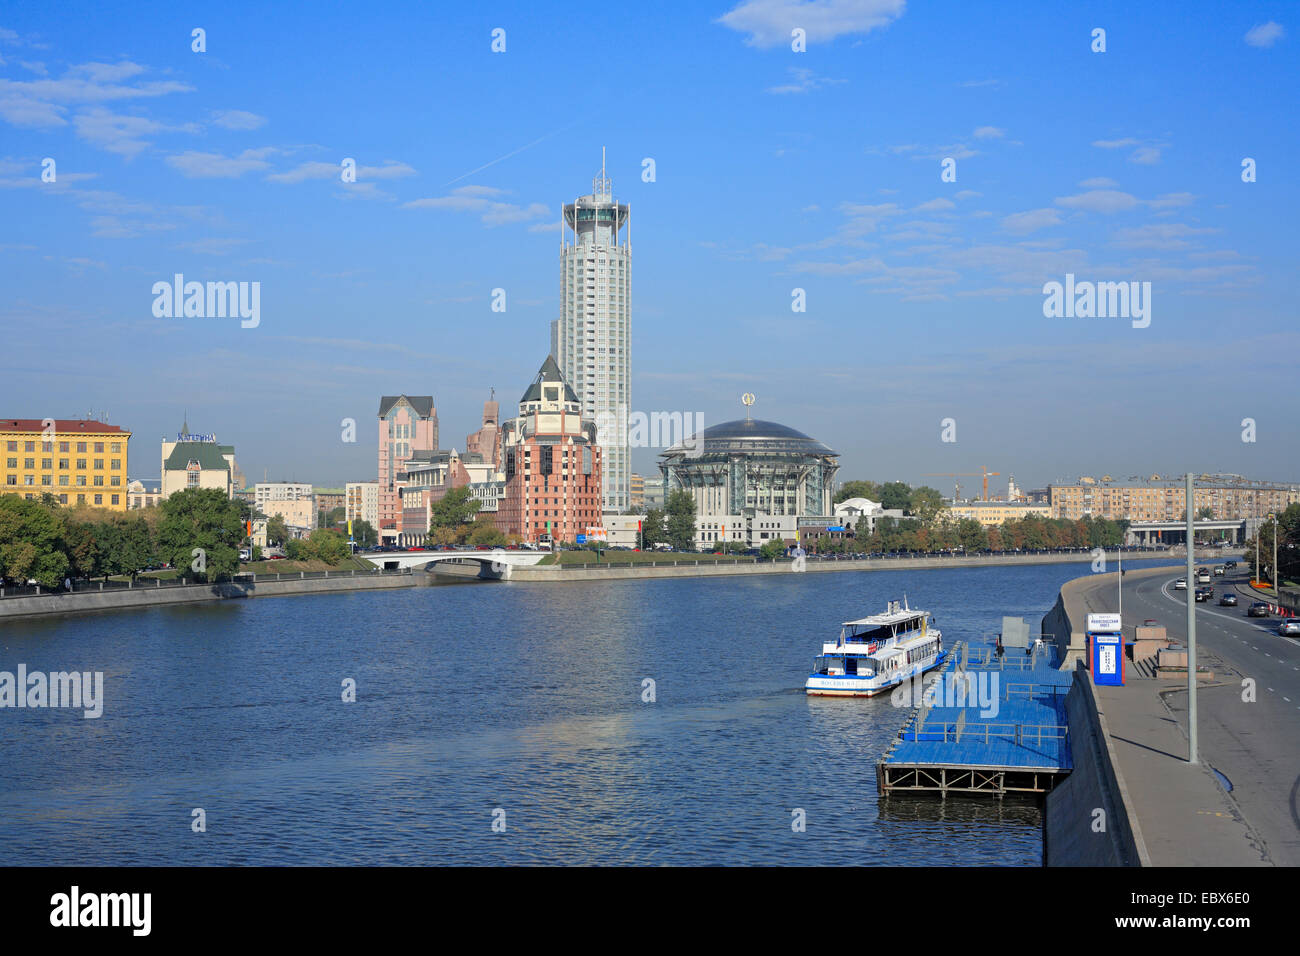 Bâtiment moderne avec la Maison de la musique, Moskova avec bateau de tourisme, la Russie, Moscow Banque D'Images